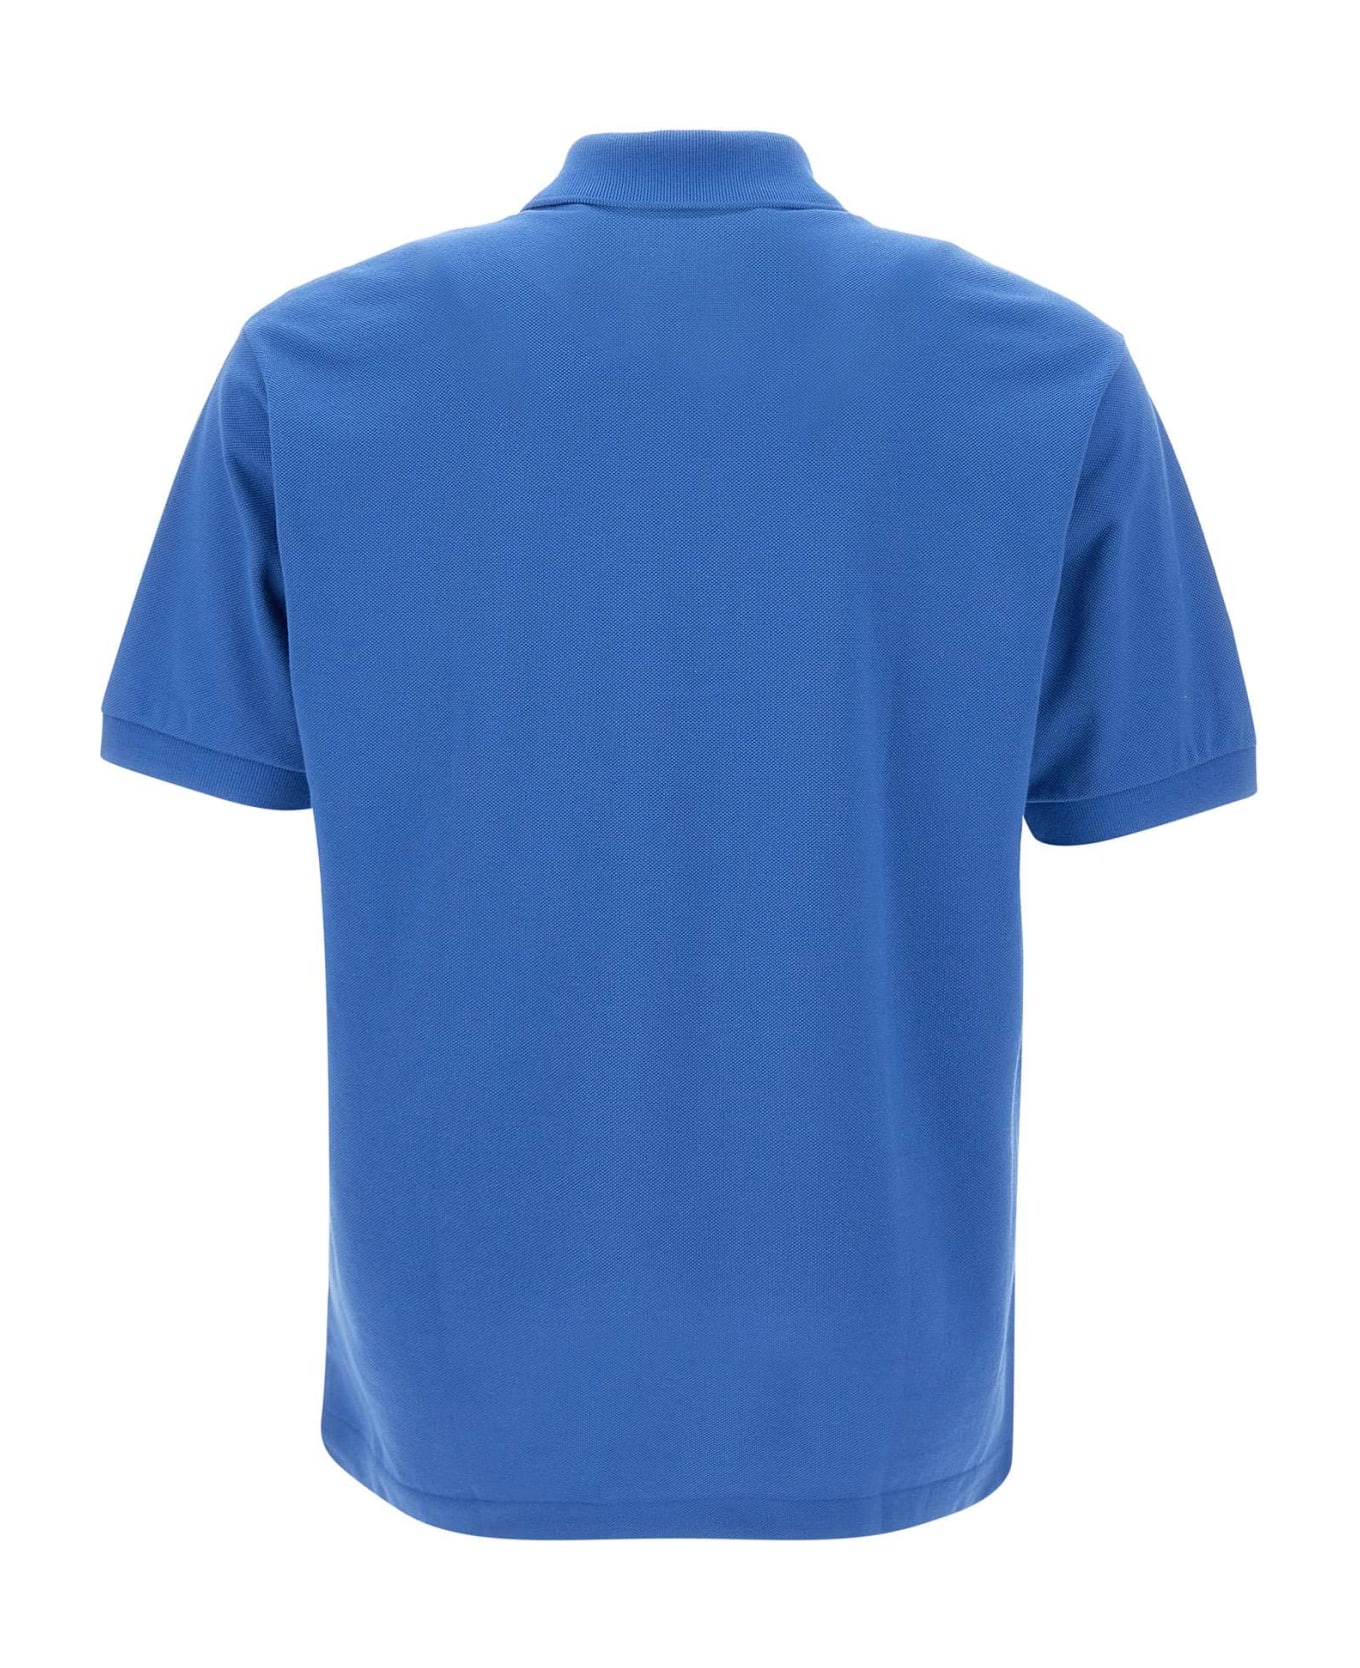 Lacoste Cotton Piquet Polo Shirt - BLUE ポロシャツ